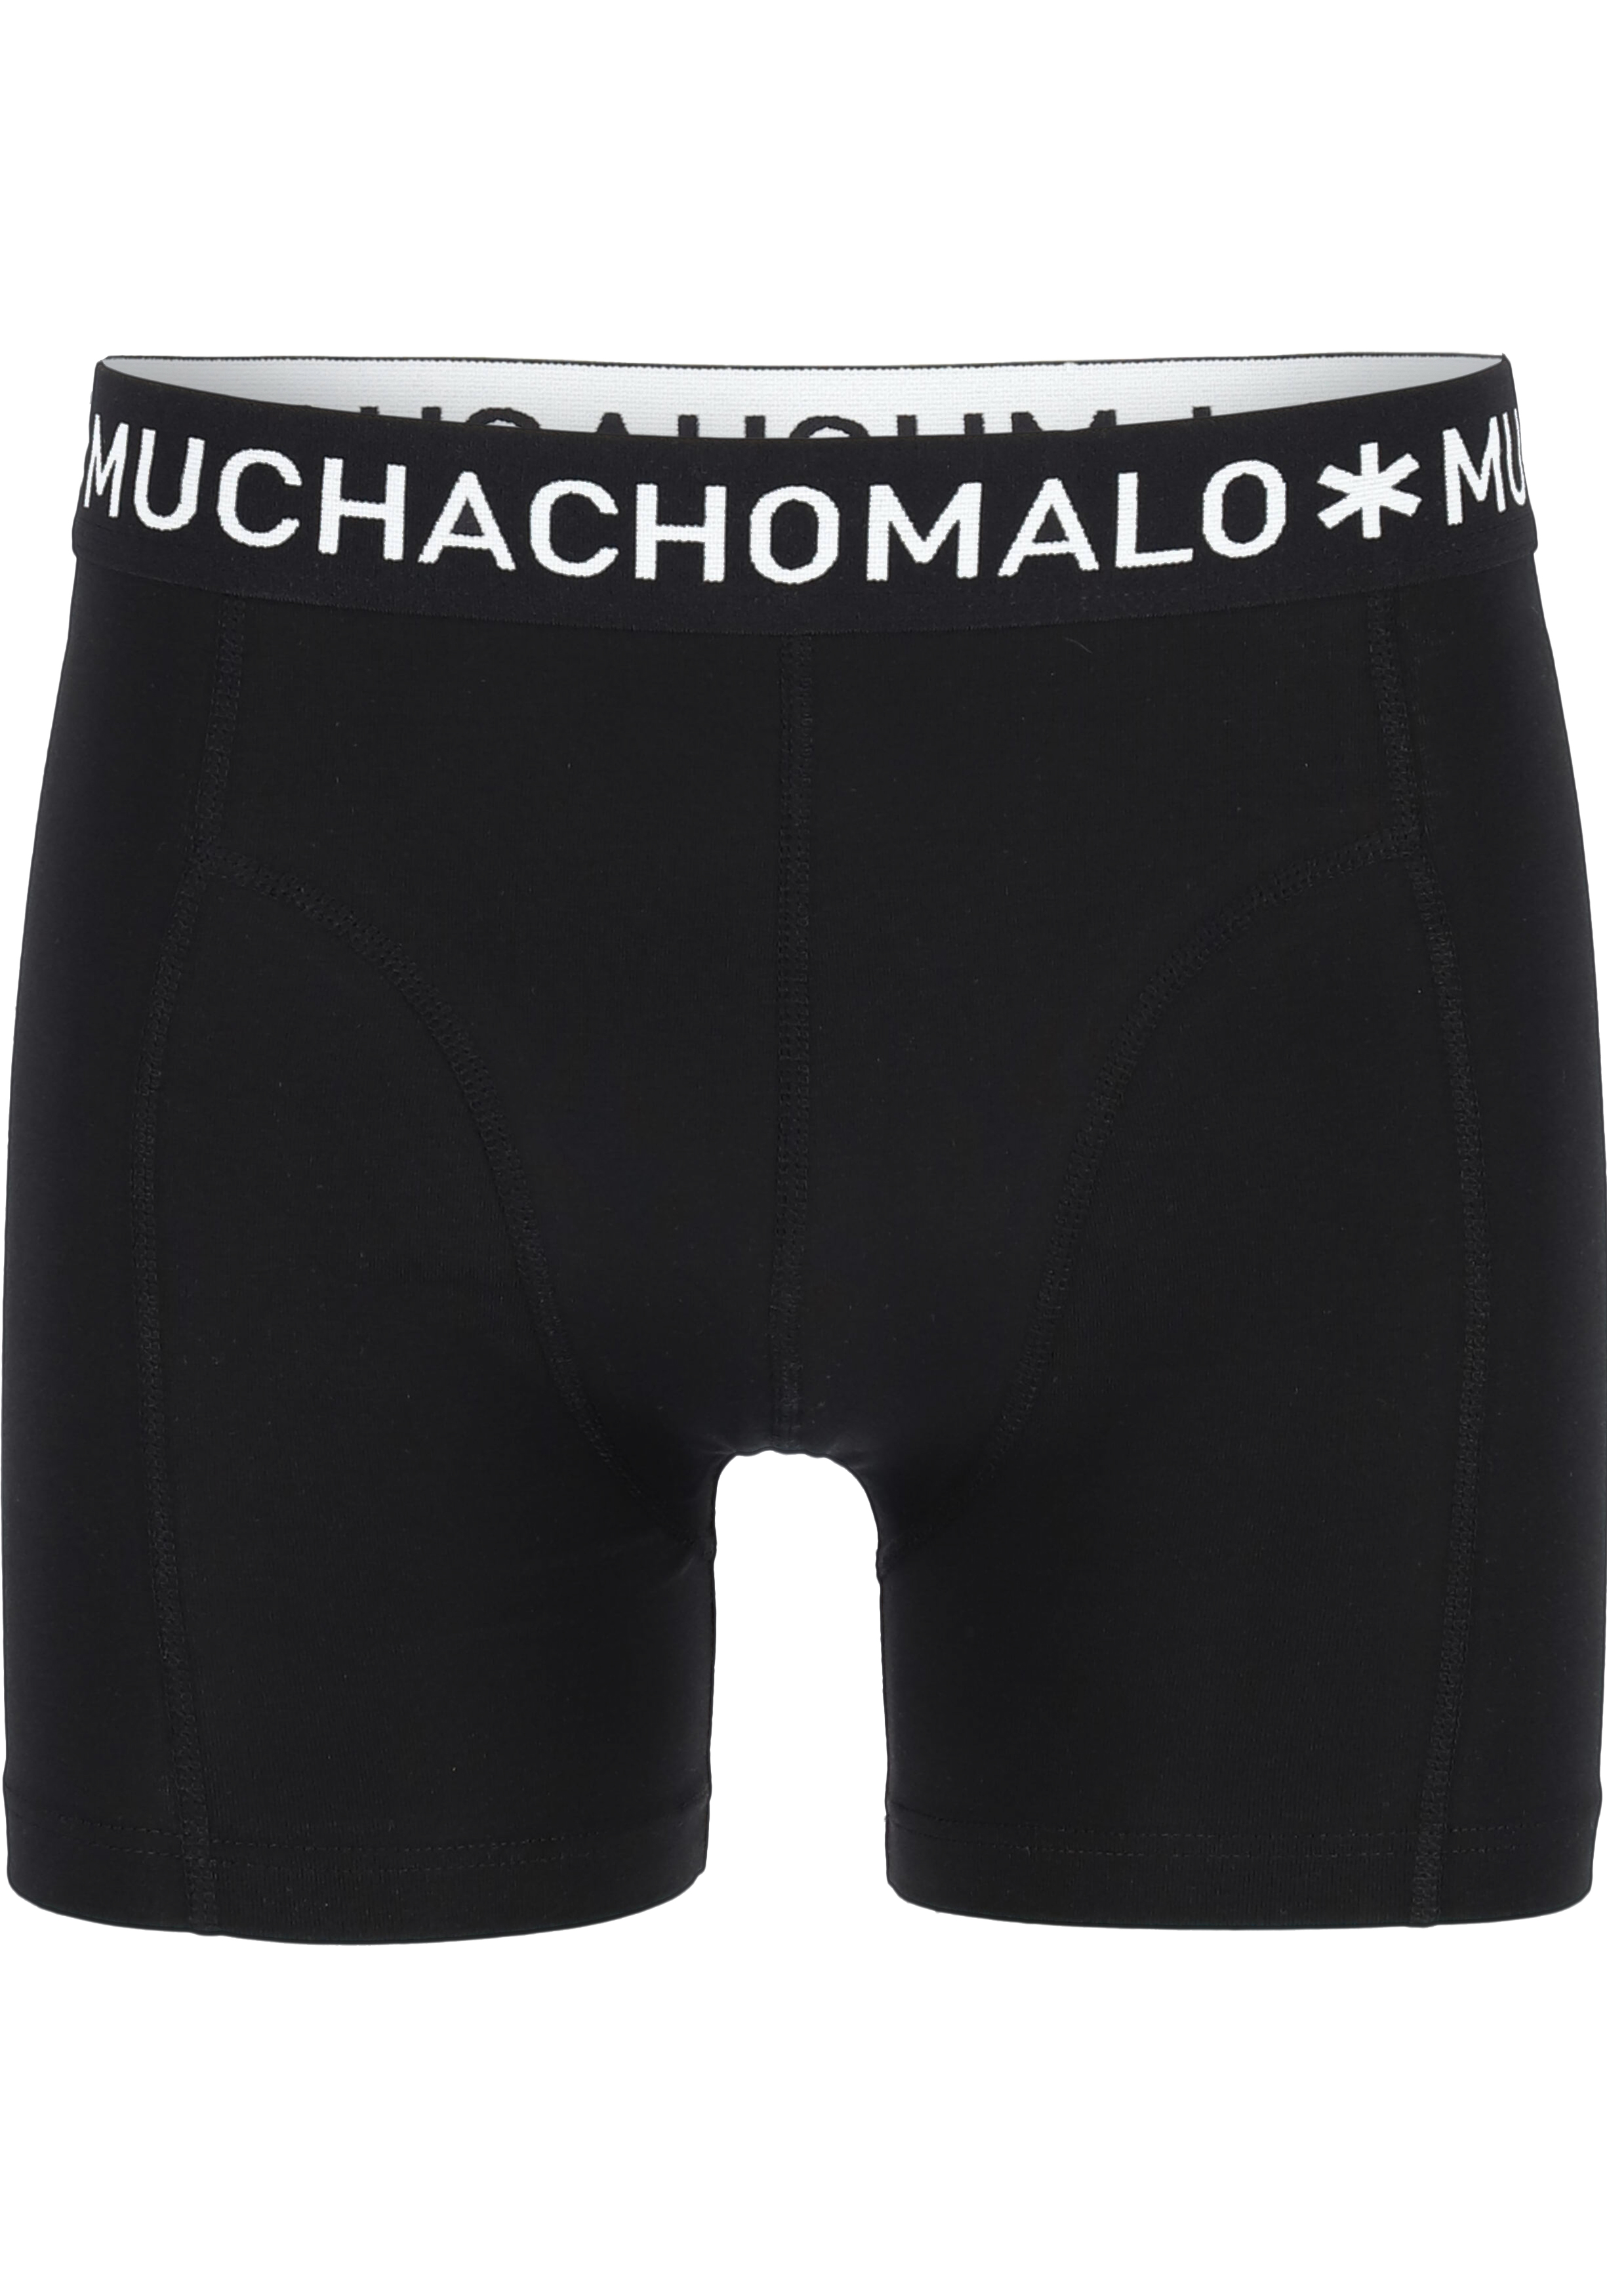 Sloppenwijk Kameel badminton Muchachomalo boxershorts, 2-pack, zwart - Gratis bezorgd